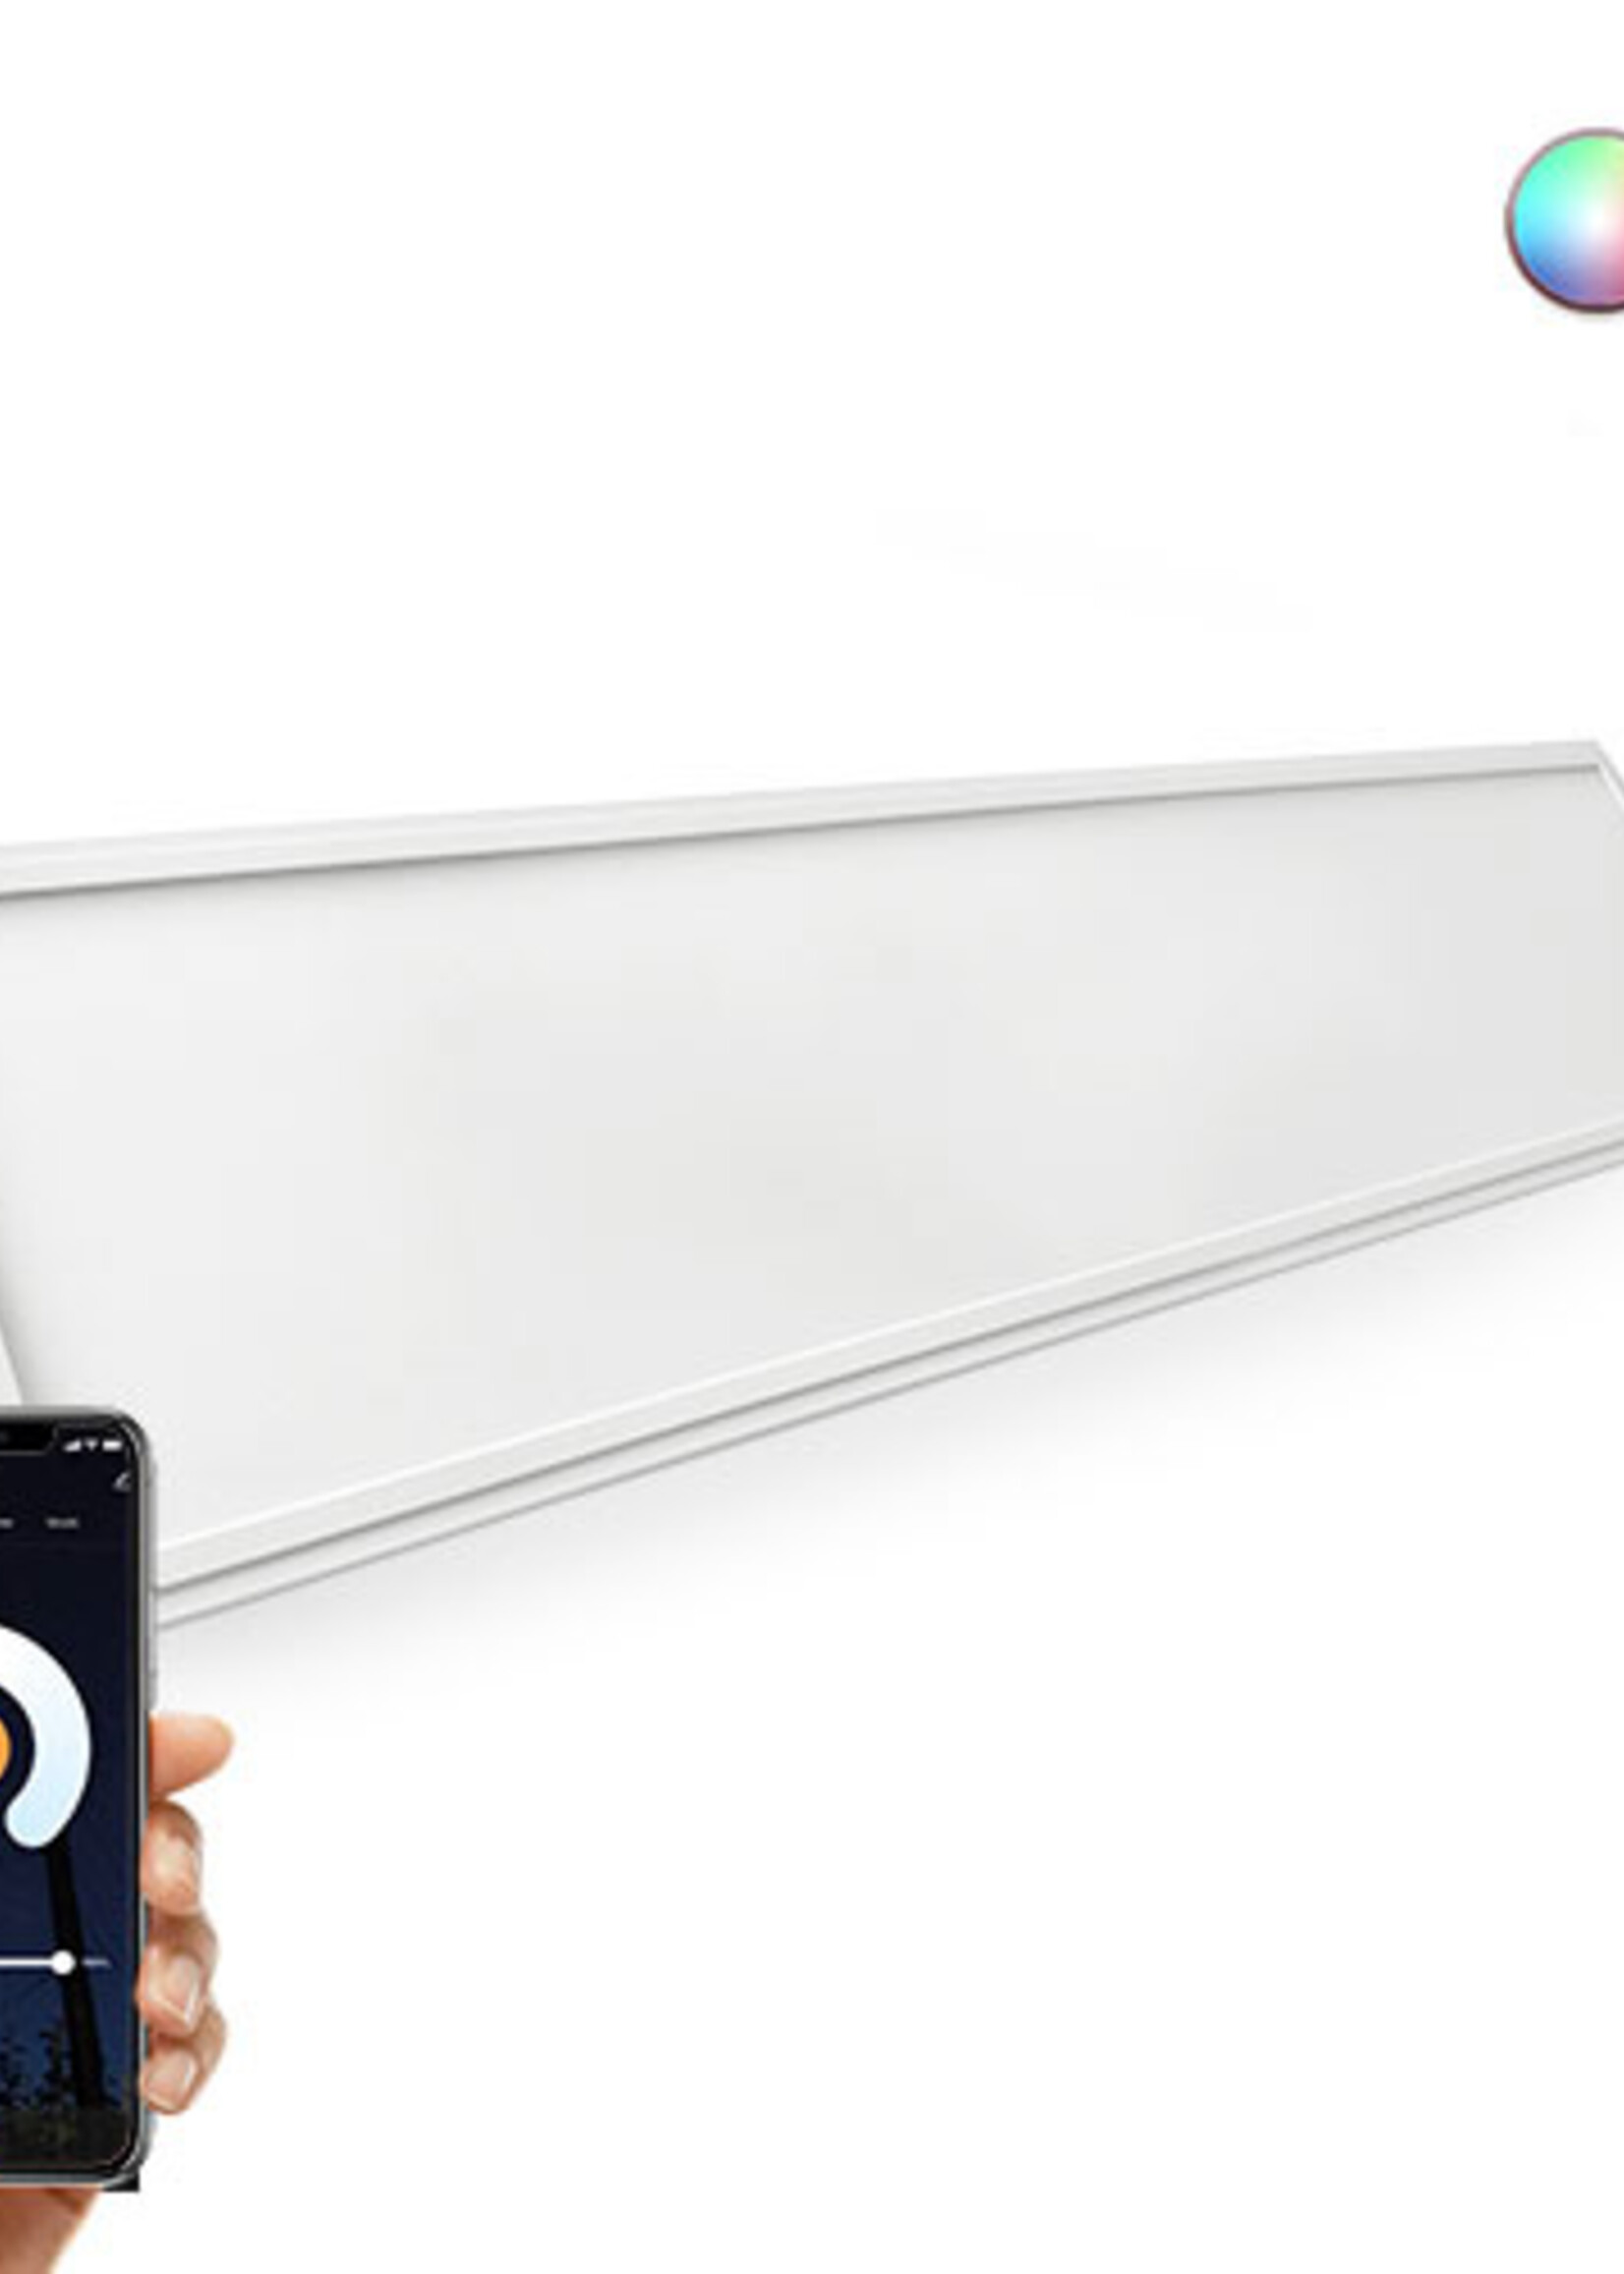 LEDWINKEL-Online WiFi LED Paneel 60x120cm RGB+CCT 40W Edge-lit